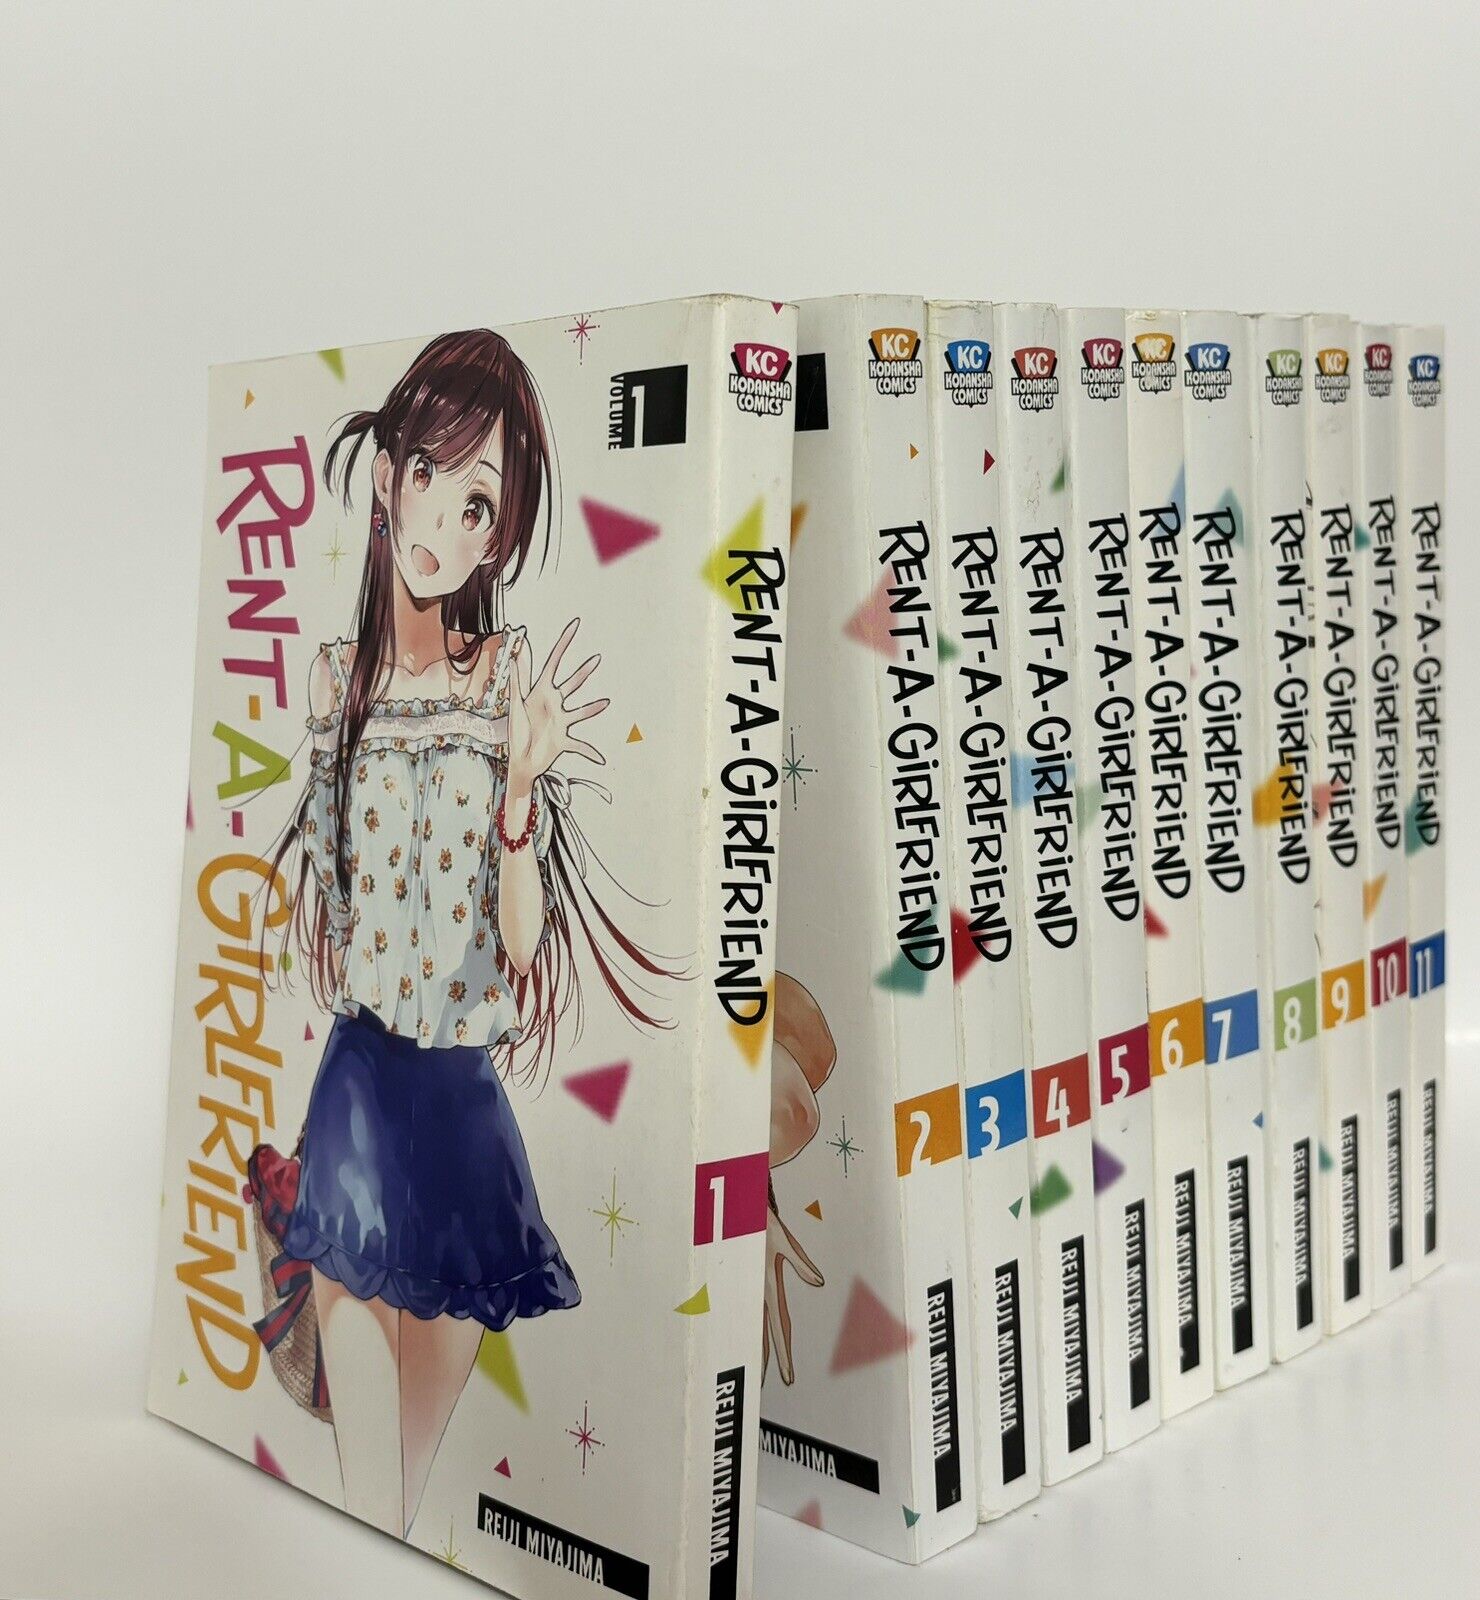 Rent A Girlfriend Vol 1-11 English Manga Lot